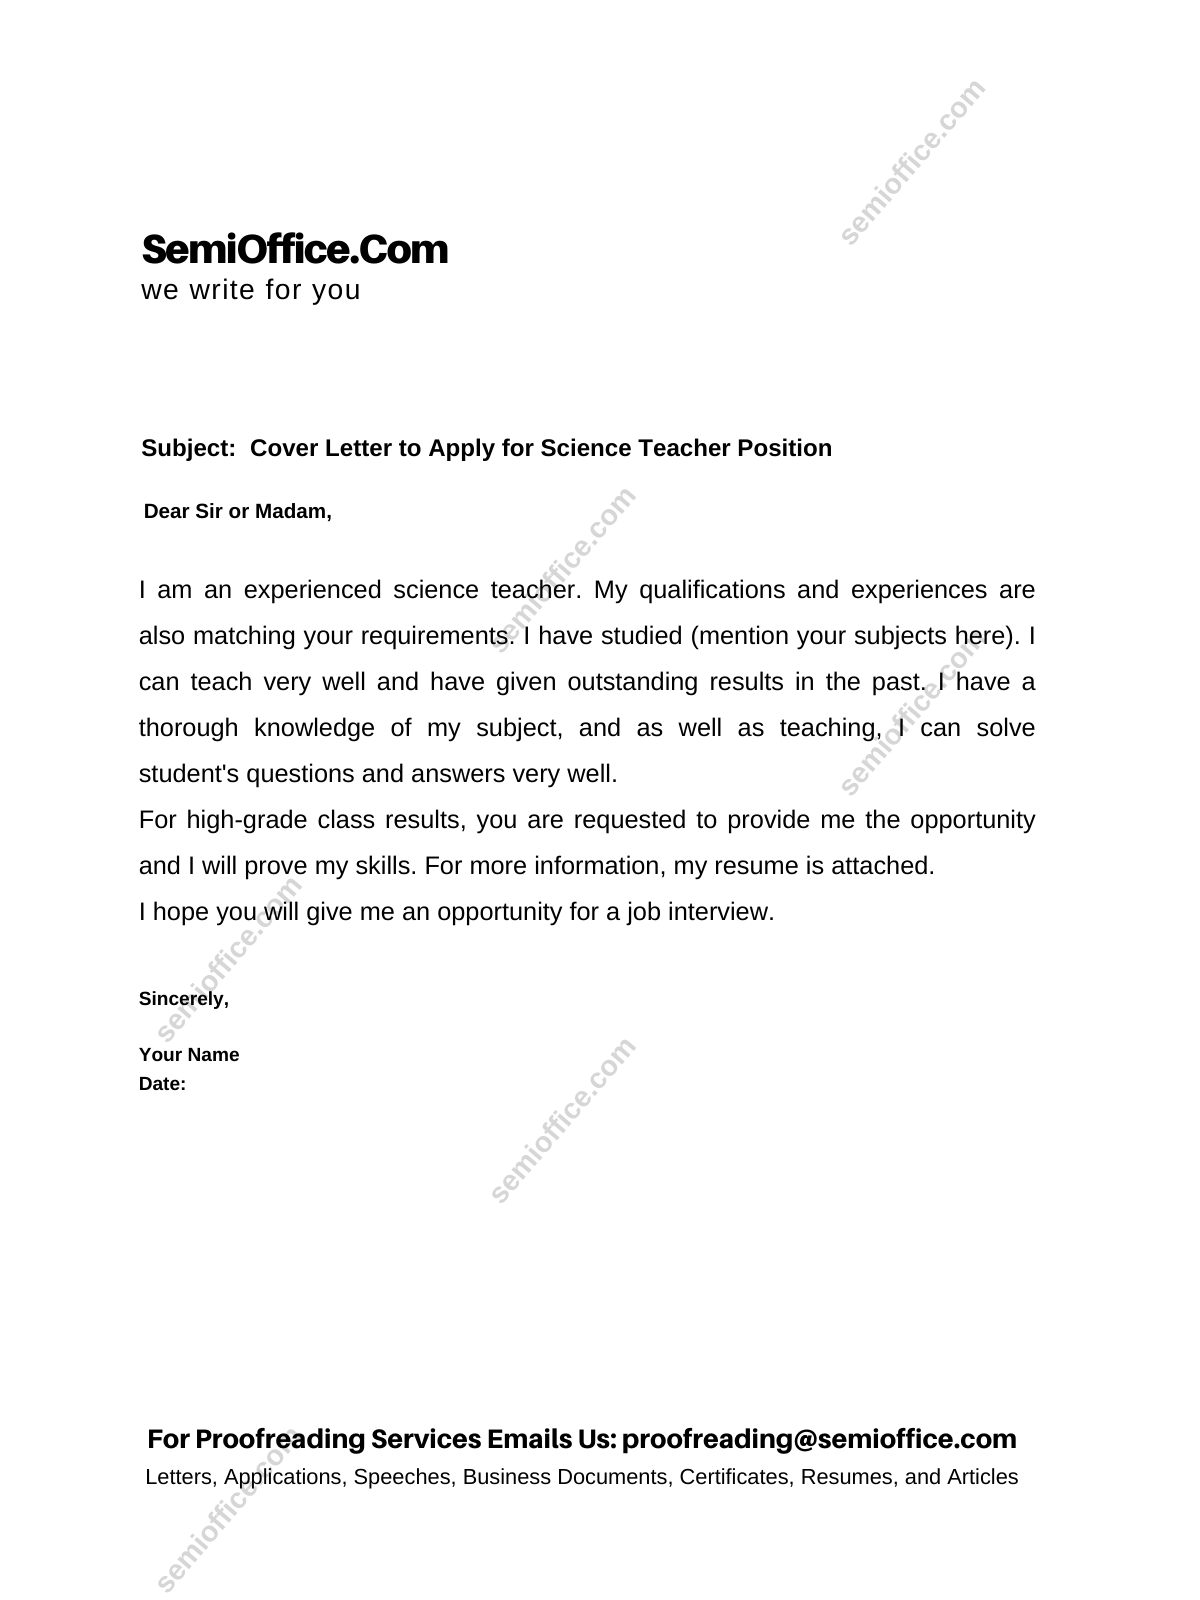 science teacher job cover letter